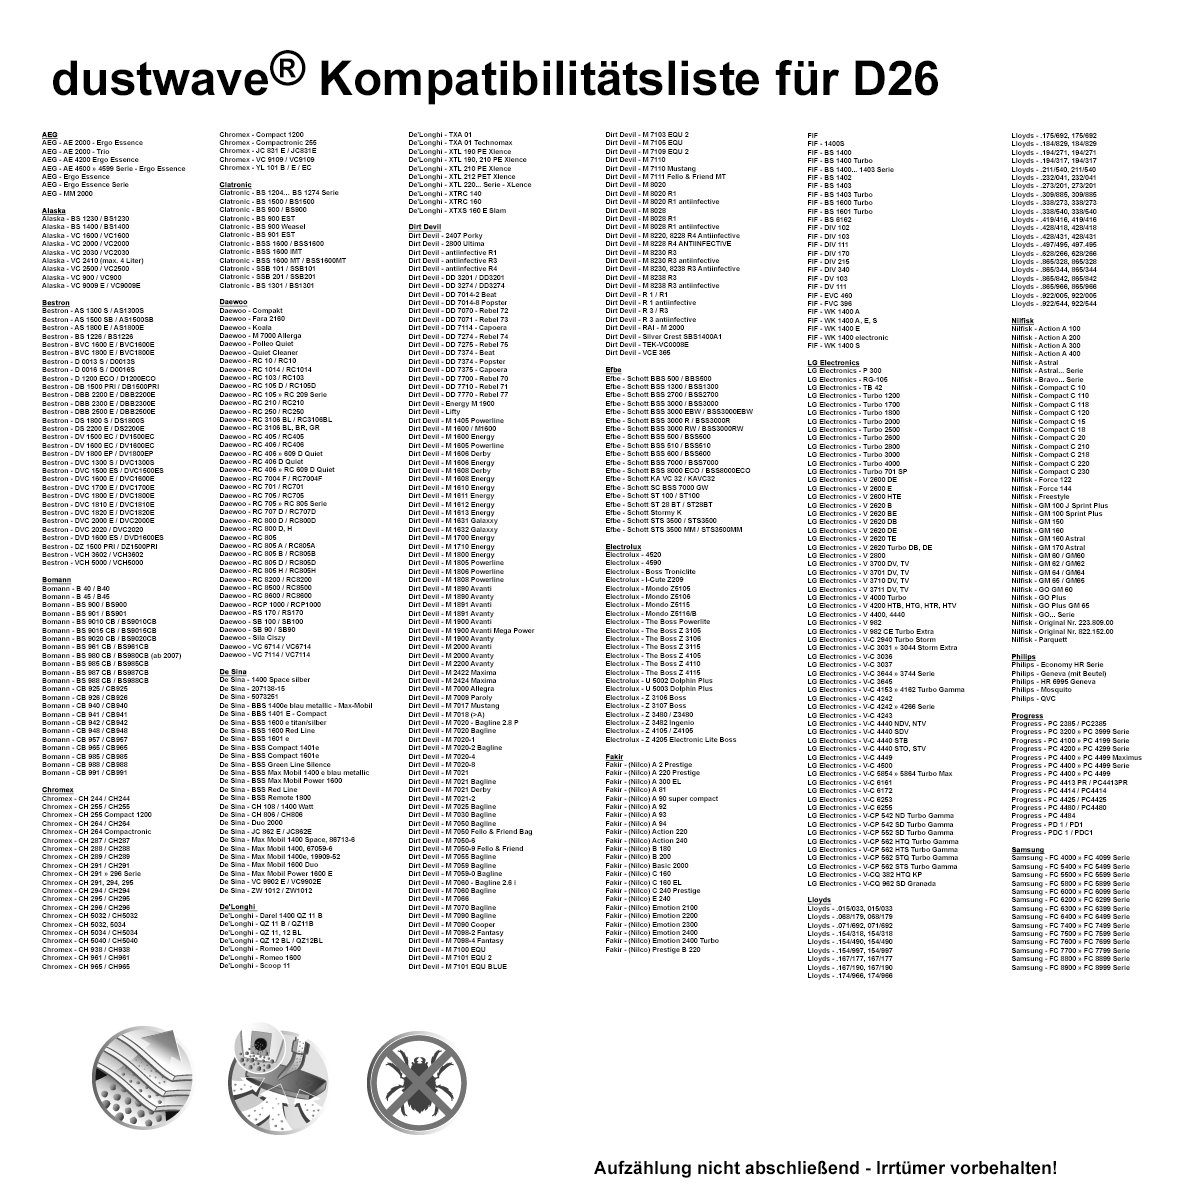 Dustwave Staubsaugerbeutel Test-Set, W Silencio für 7 - 15x15cm W 2000 + AFK AFK 2000 - 1 passend 7 (ca. zuschneidbar) St., Staubsaugerbeutel Hepa-Filter Test-Set, BS Silencio, Standard 1 1 BS